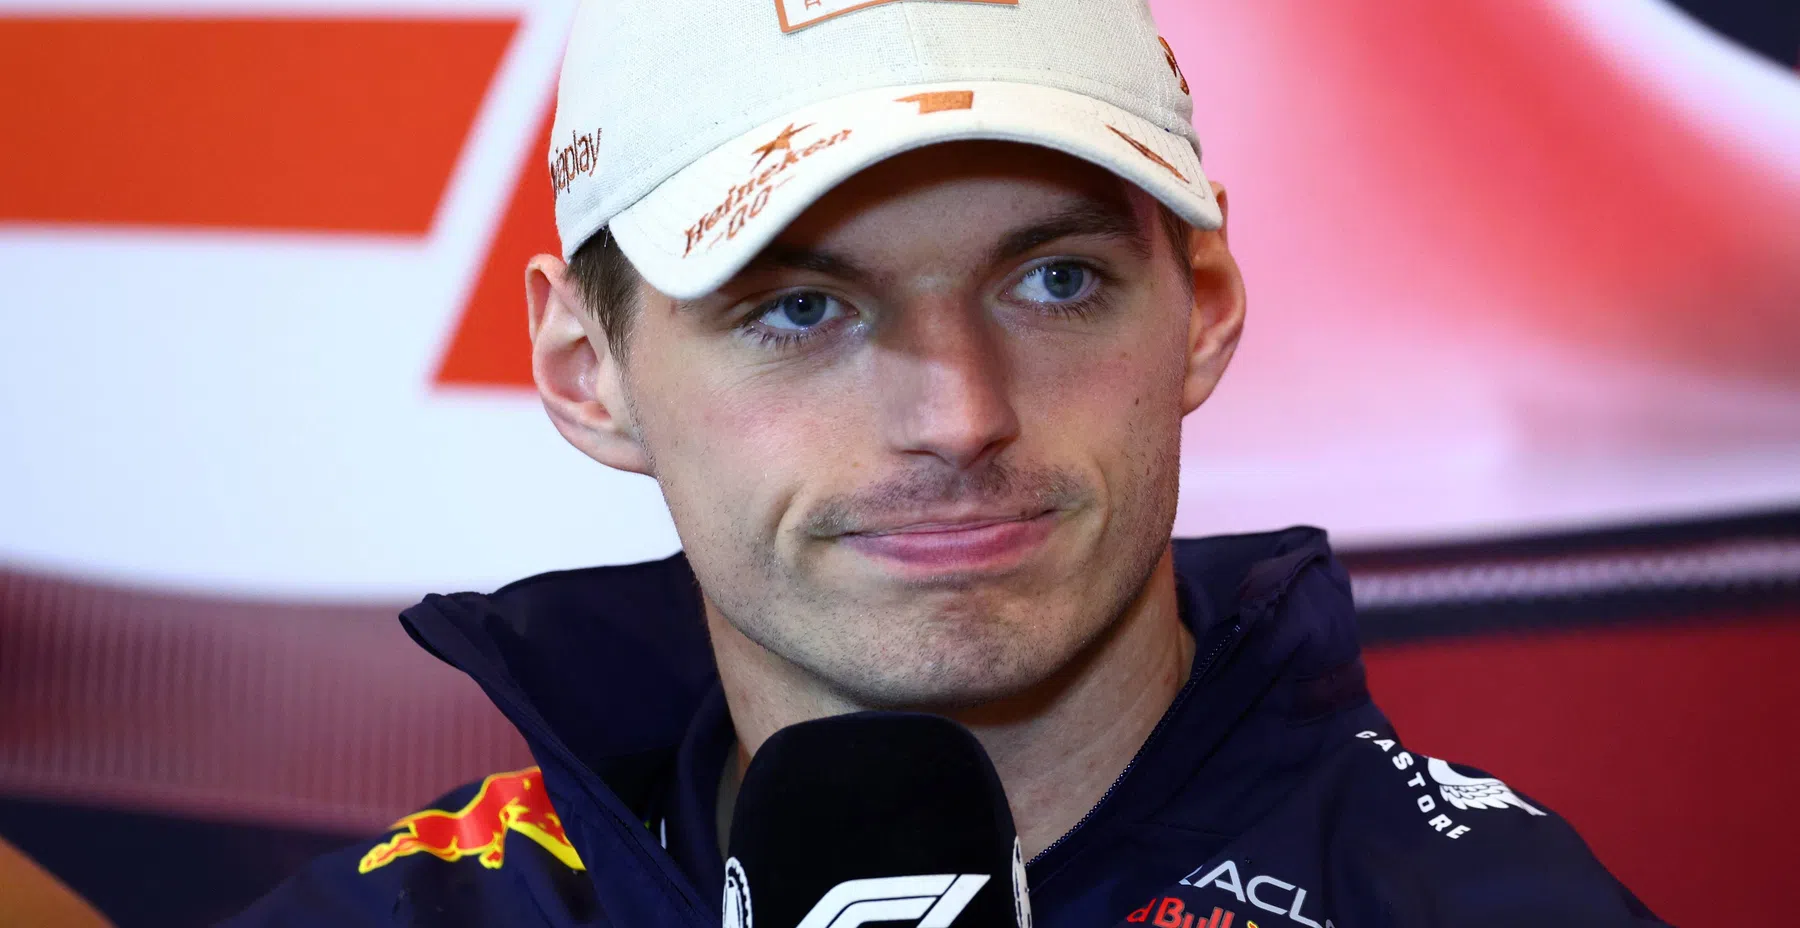 Verstappen on possible switch to McLaren